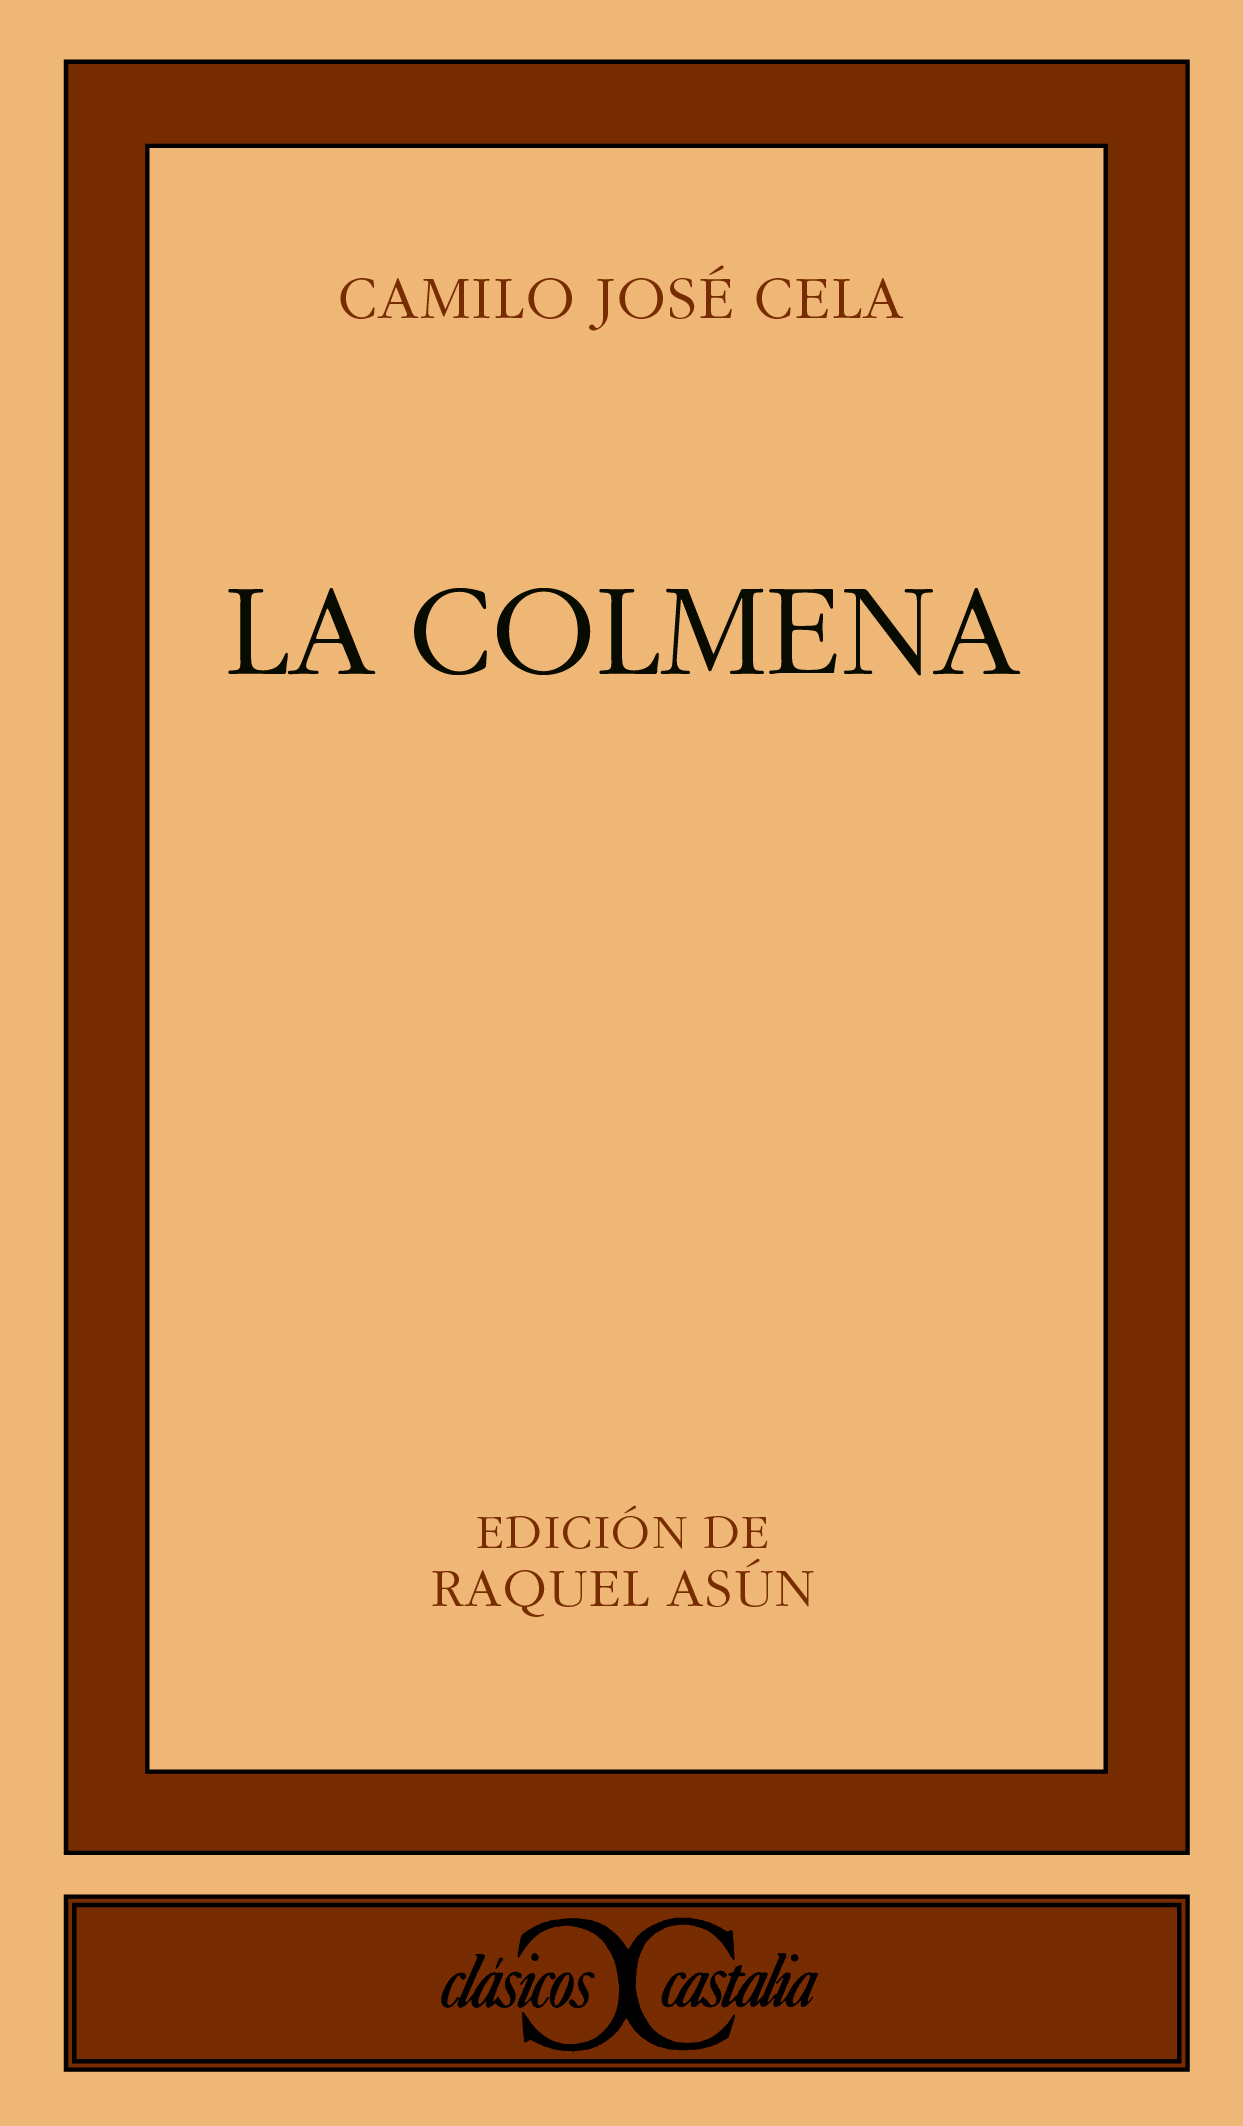 El cuento español (1940-1980)